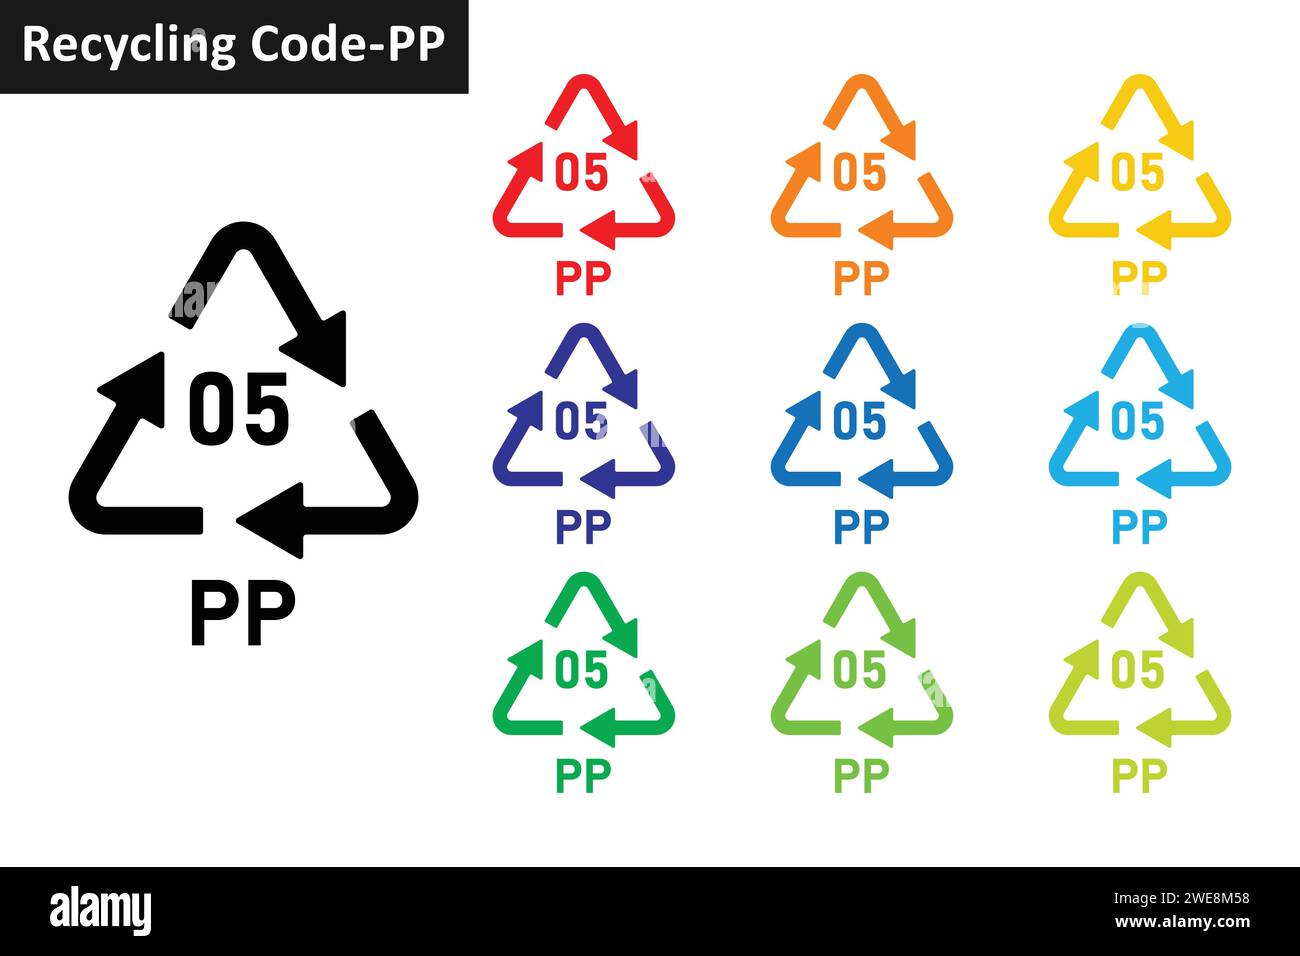 Jeu d'icônes de code de recyclage de plastique PP. Symbole de recyclage du plastique 05 PP. Collection d'icônes de recyclage de plastique code 05 en dix couleurs différentes. Illustration de Vecteur